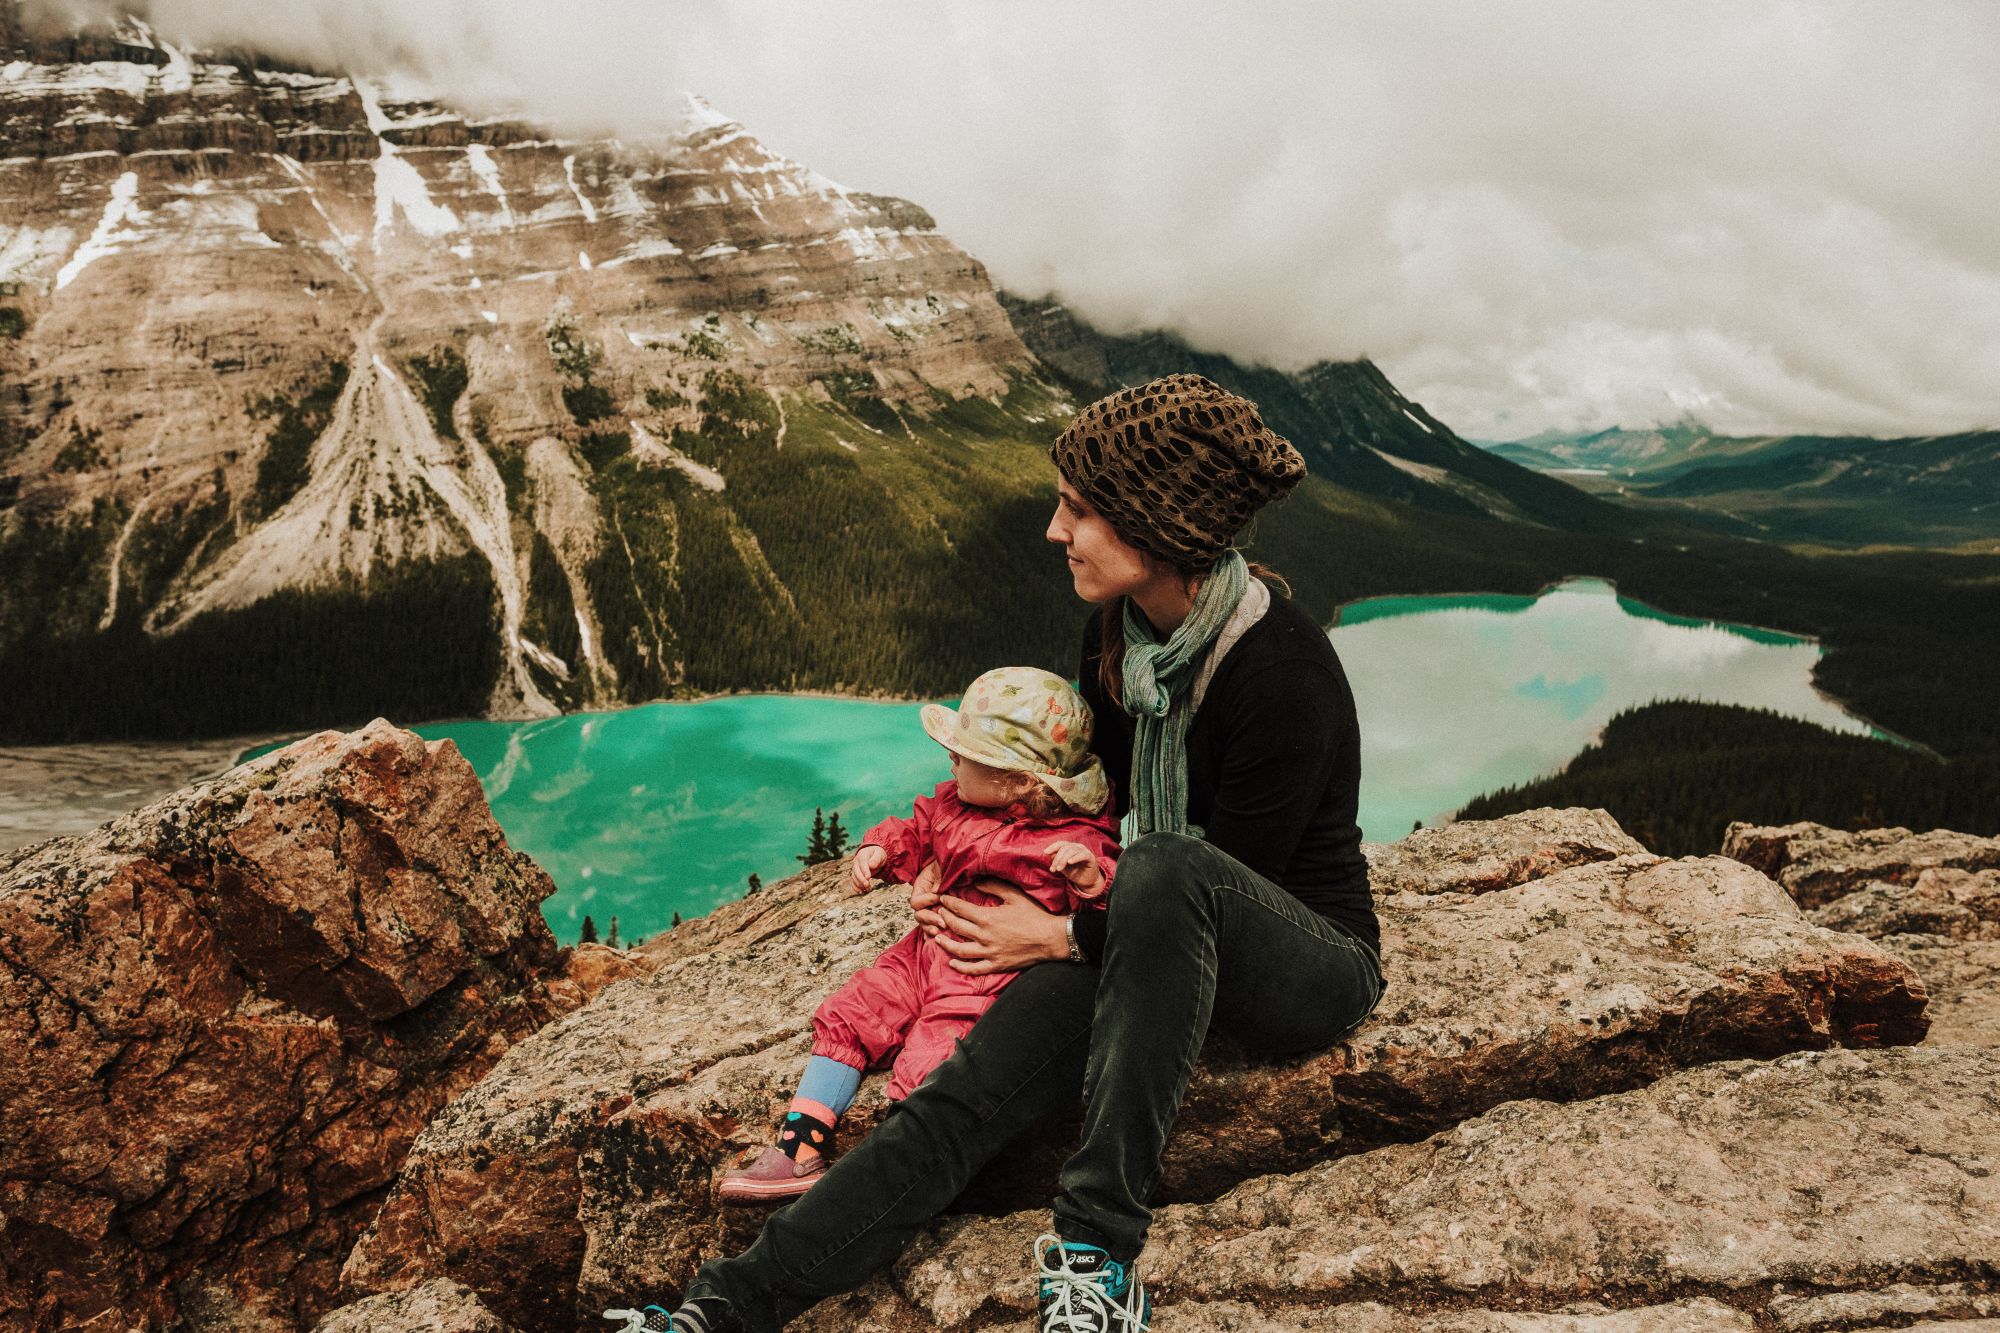 Frau und Kind auf einem Berg mit Blick auf einen See.